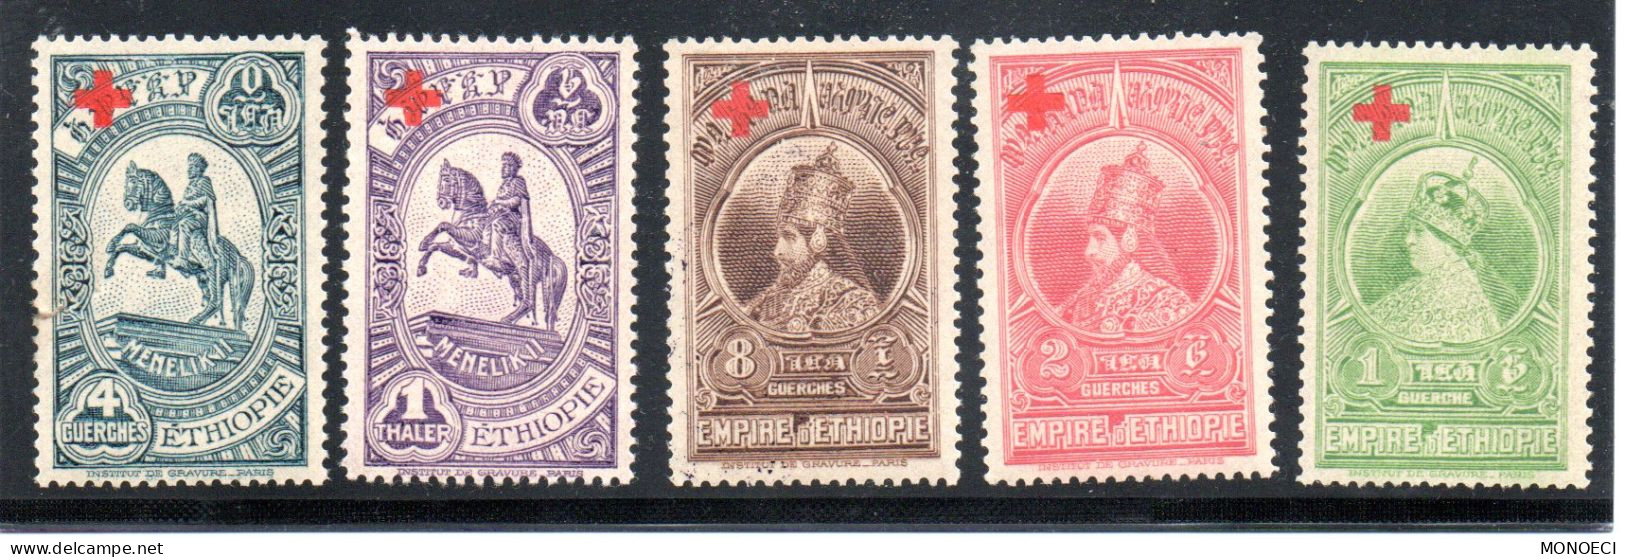 ETHIOPIE -- 5 Timbres Neufs ** -- Types Des T.P. De 1931 Avec Surcharge Rouge - Au Profit De La Croix Rouge - Etiopia